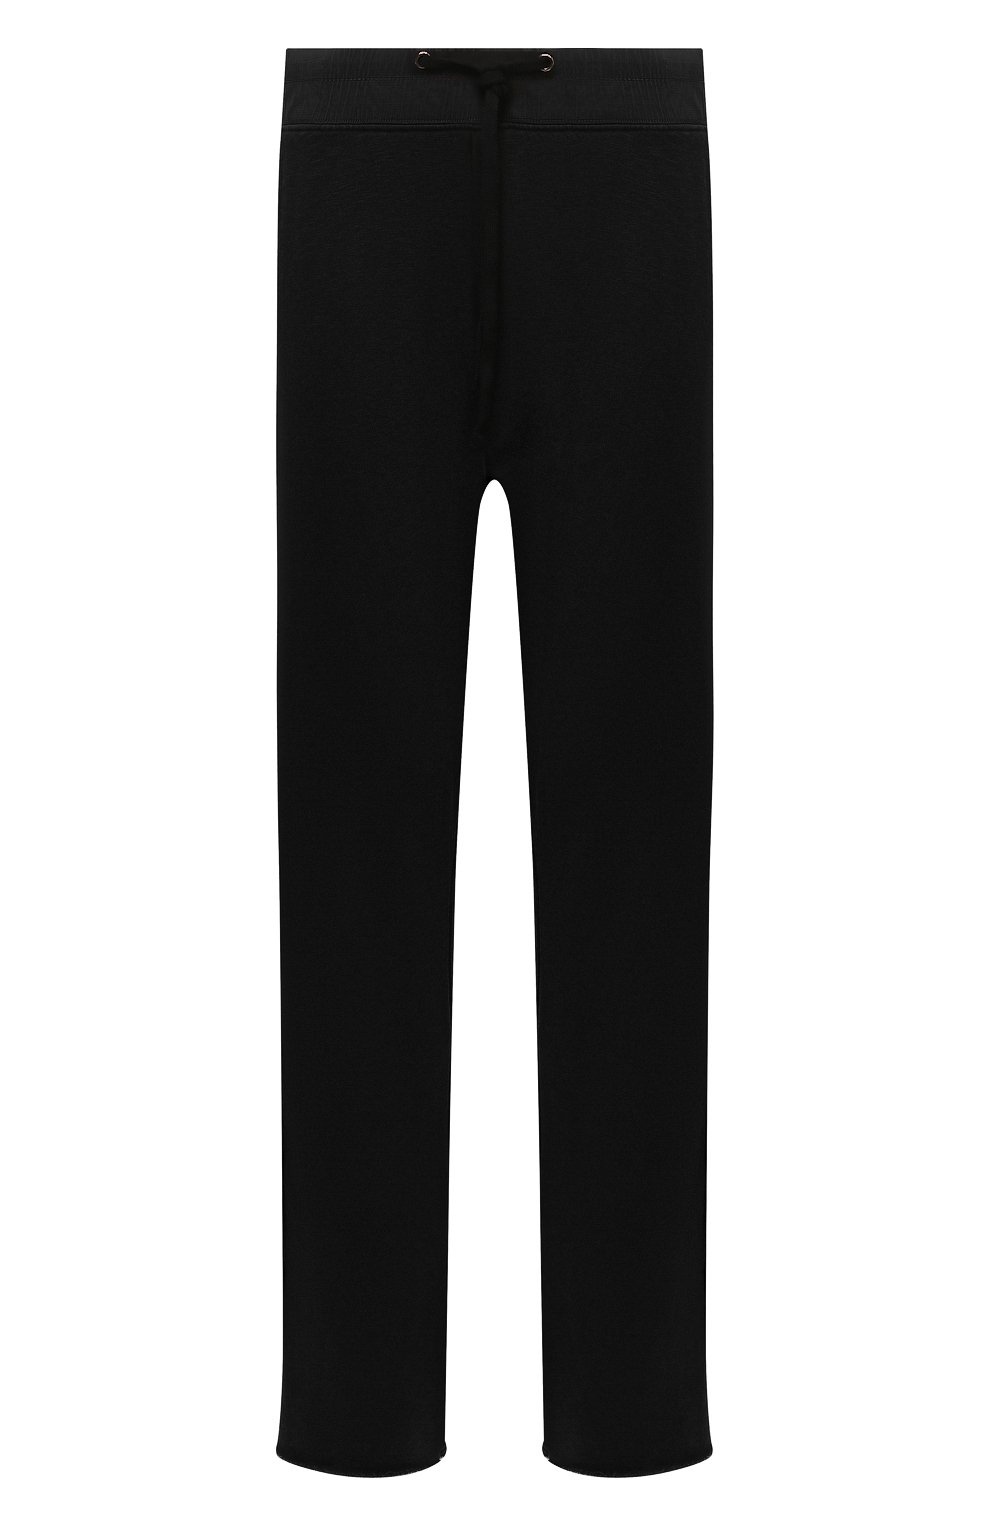 Мужские хлопковые брюки JAMES PERSE черного цвета, арт. MXA1352 | Фото 1 (Длина (брюки, джинсы): Стандартные; Случай: Повседневный; Материал внешний: Хлопок; Стили: Спорт-шик)